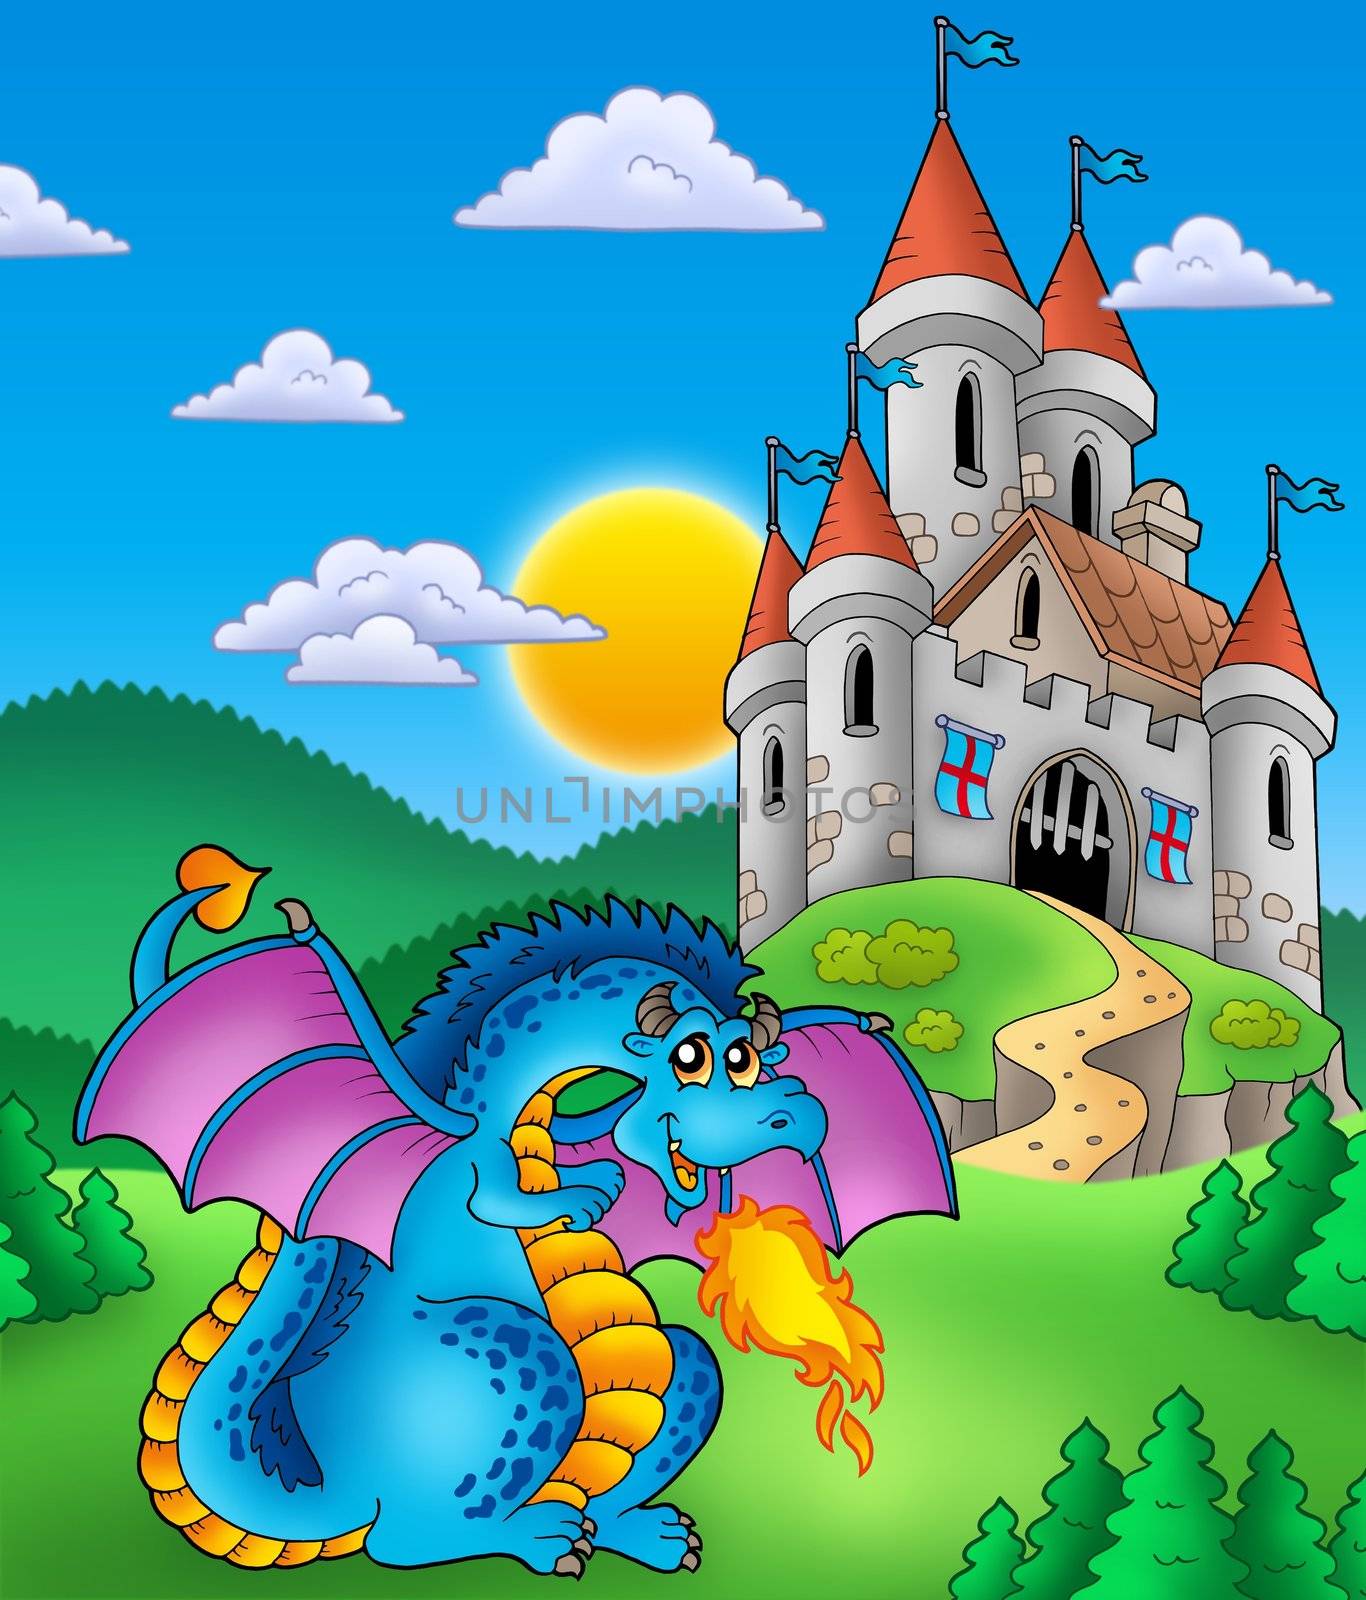 Big blue dragon with medieval castle - color illustration.